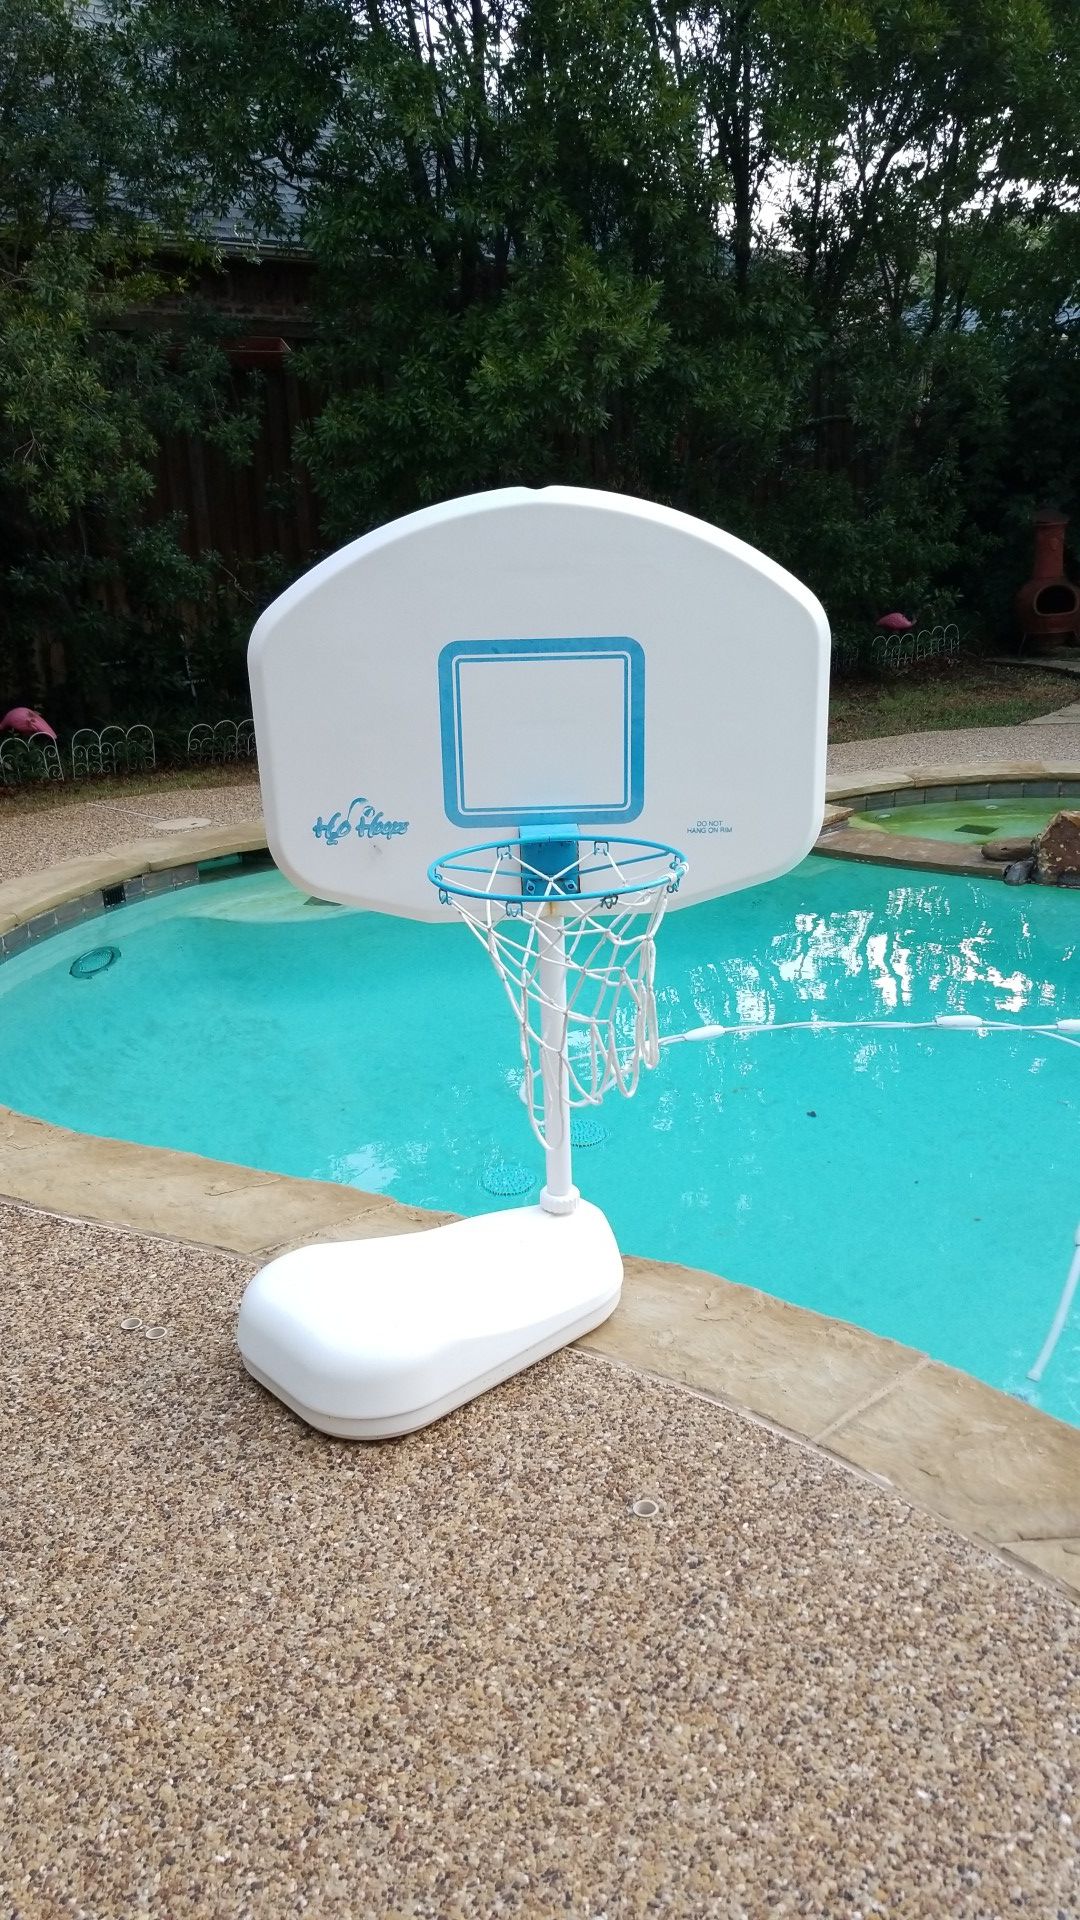 Pool basketball hoops